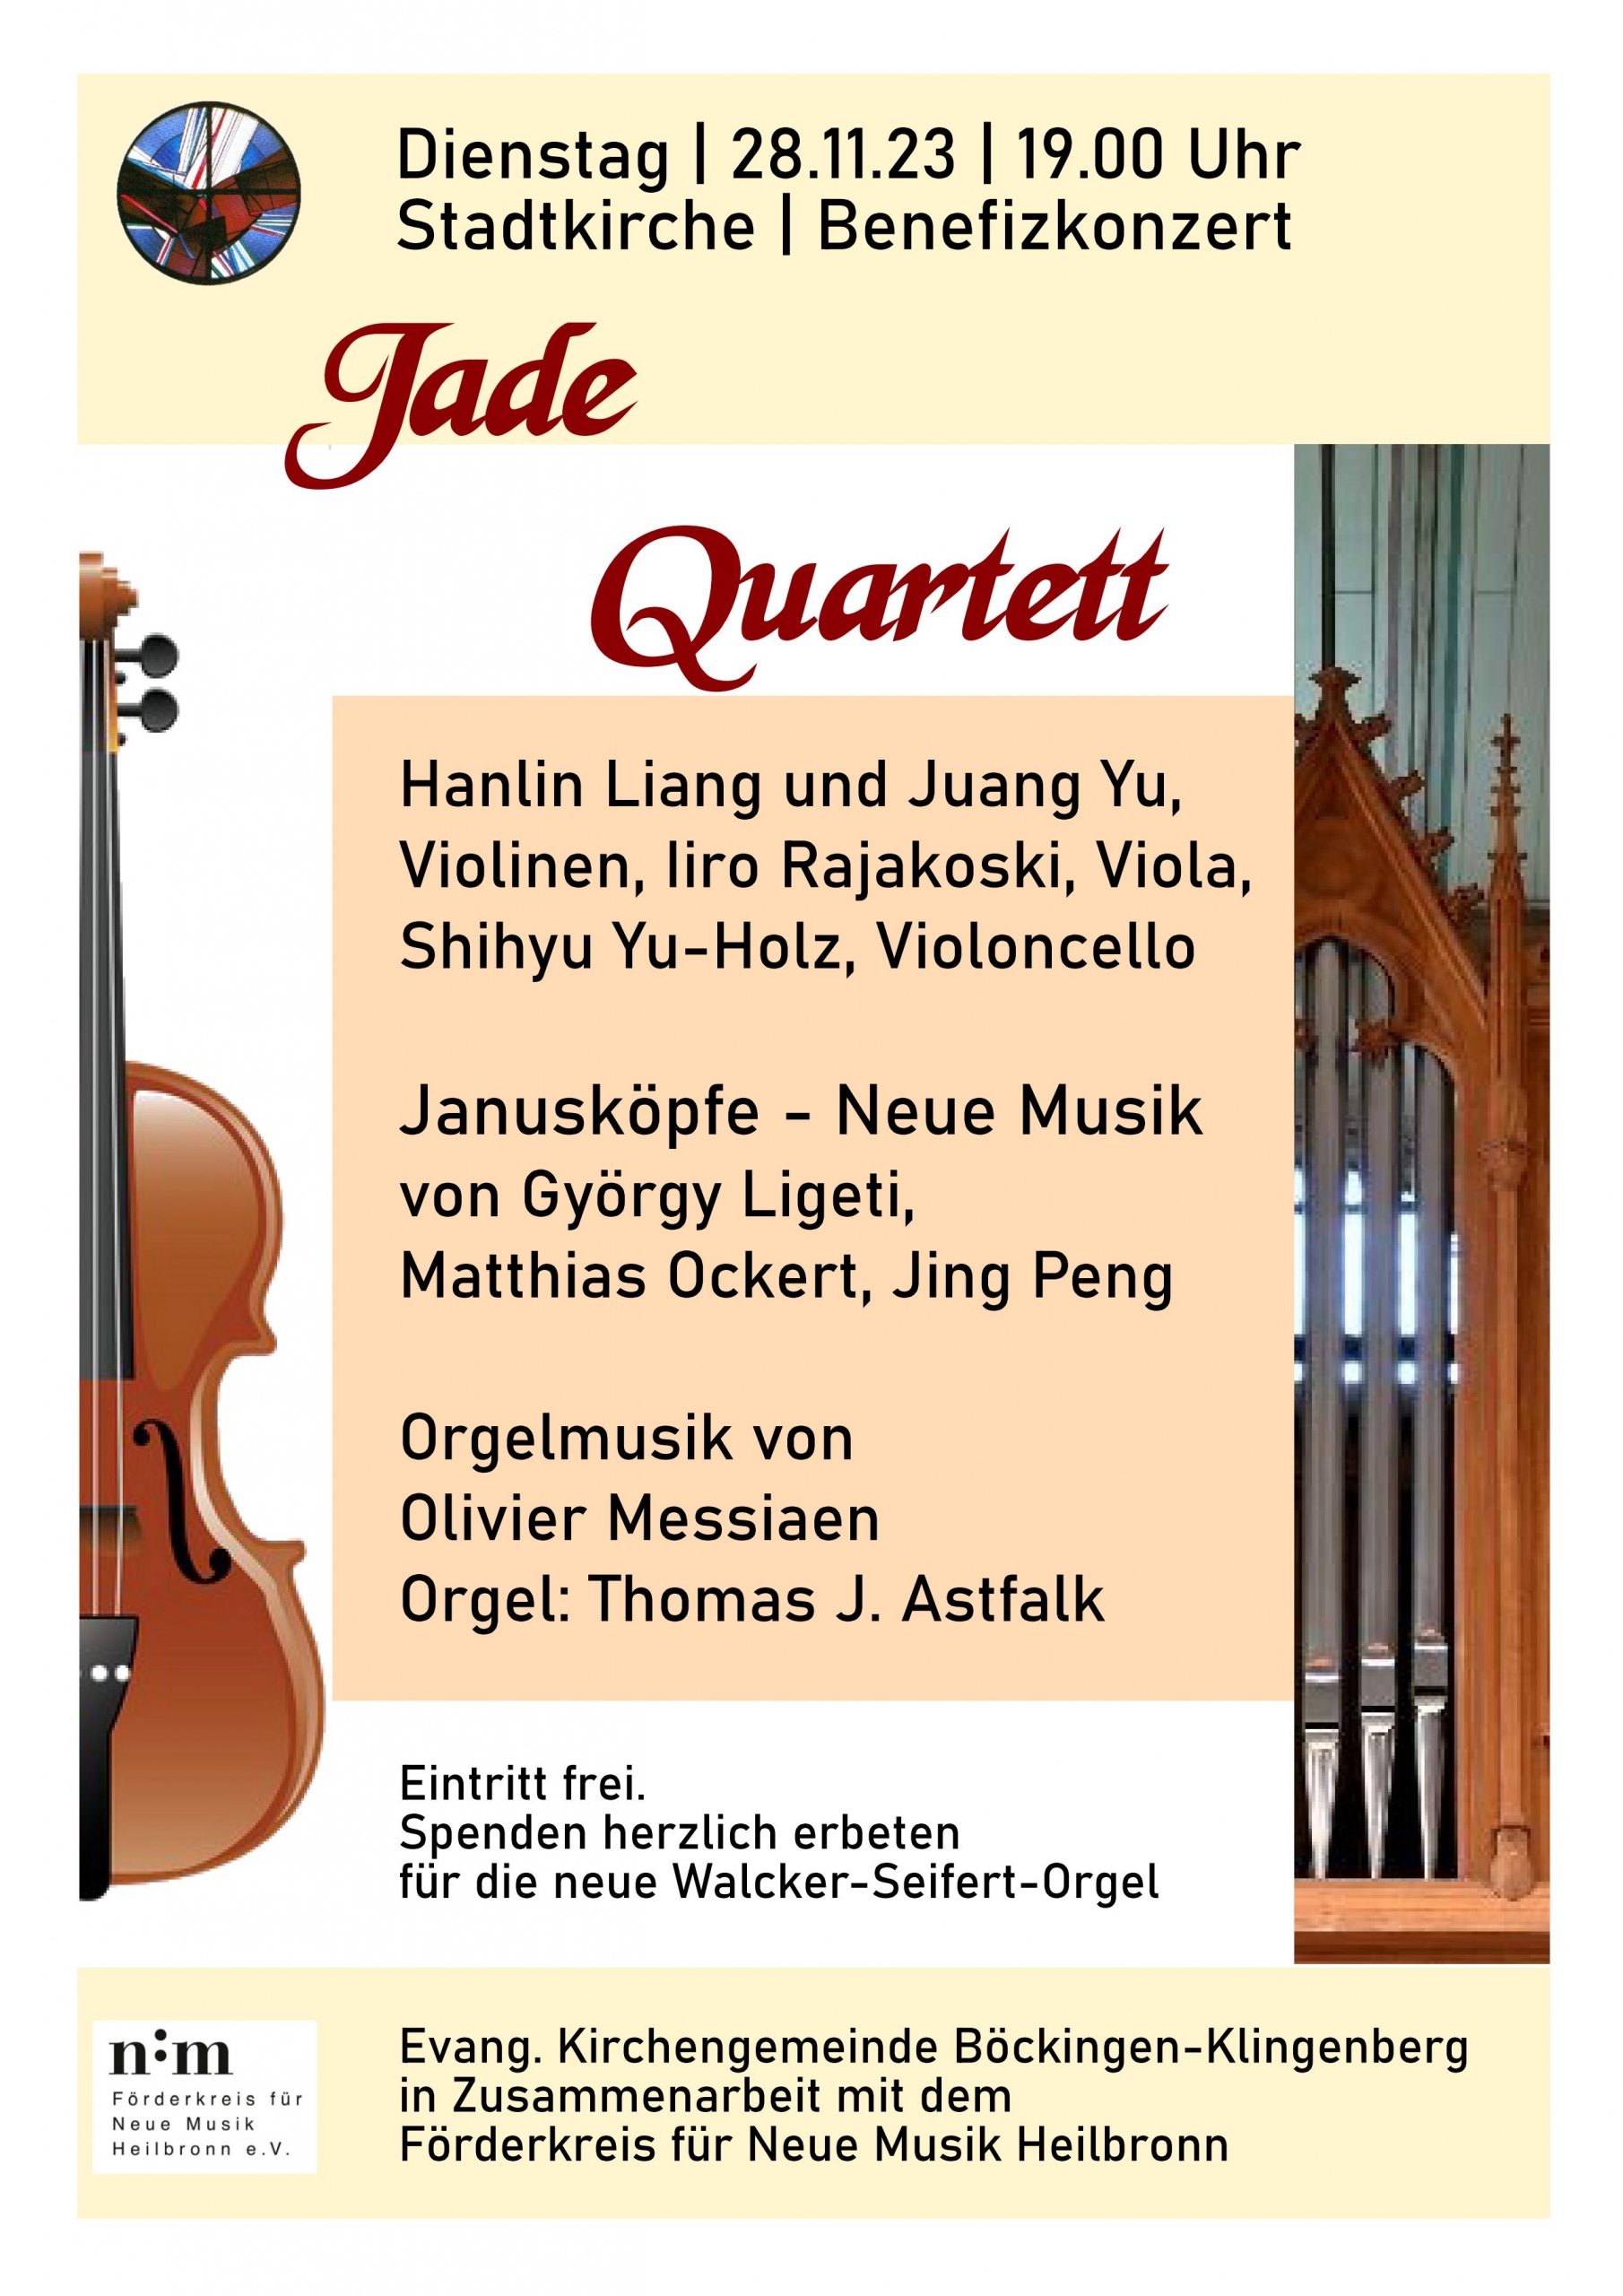 Jade Quartett in der Stadtkirche